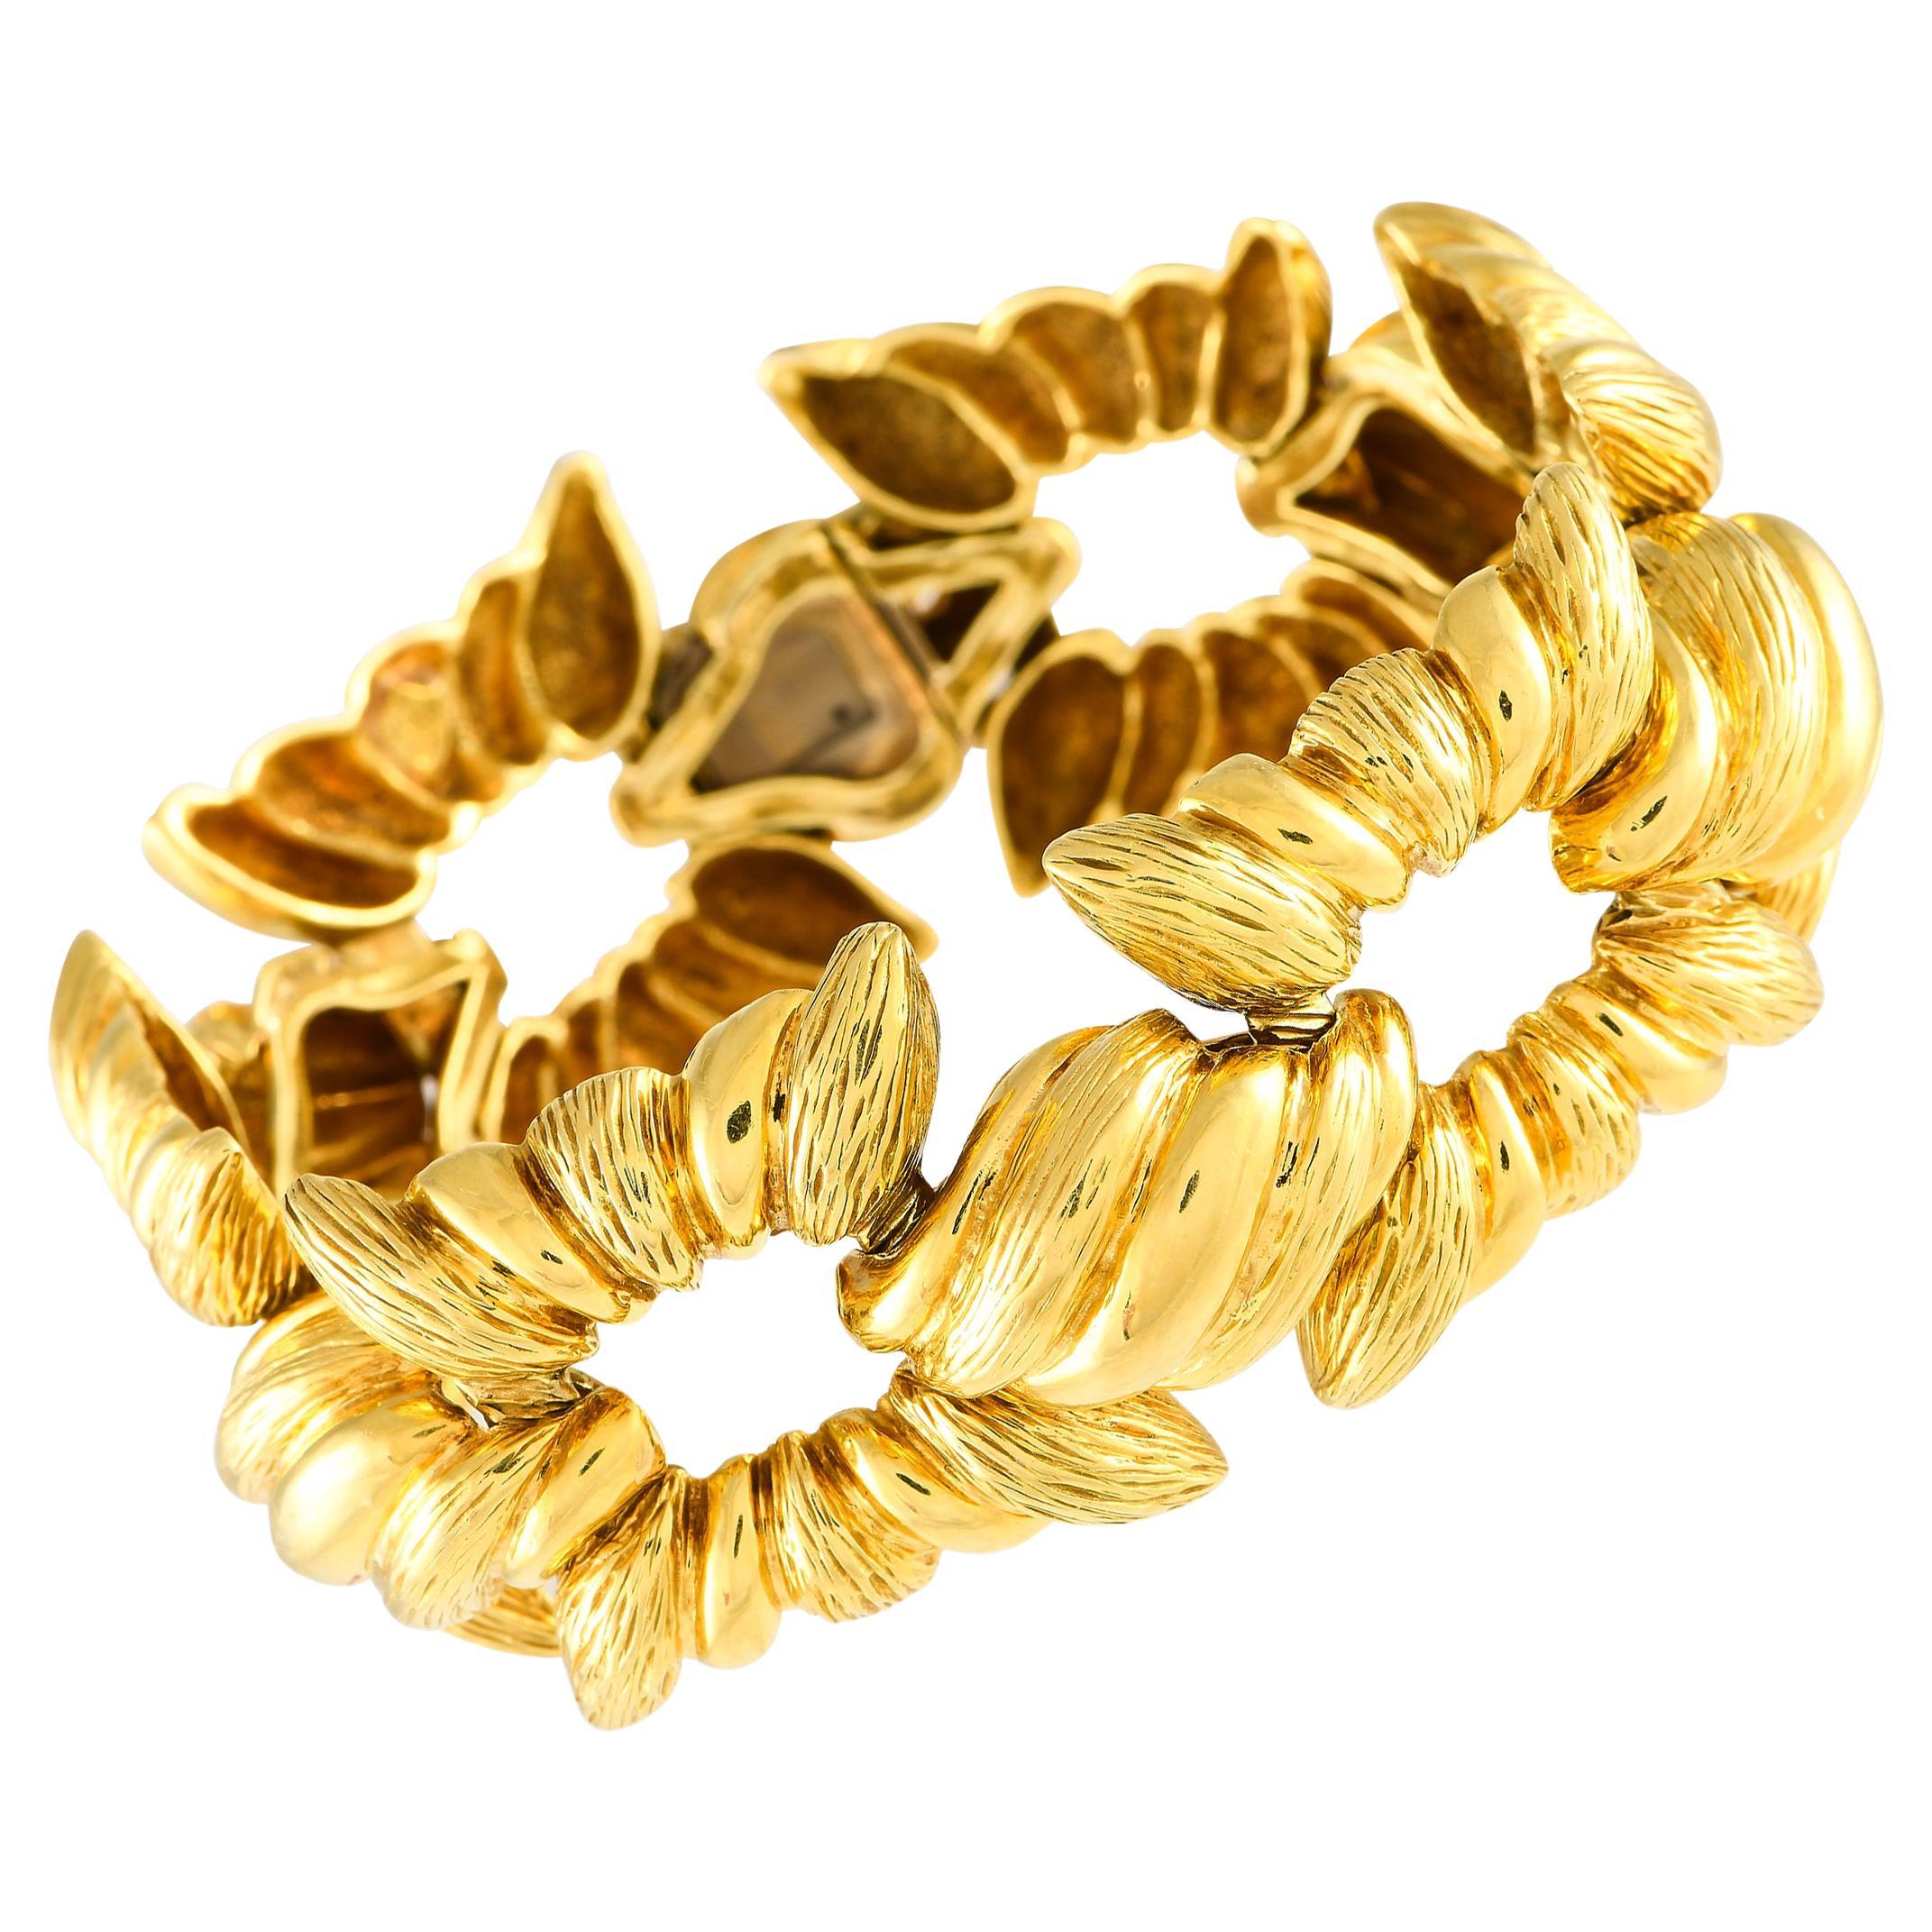 Van Cleef & Arpels Vintage 18K Yellow Gold Fluted Textured Link Bracelet